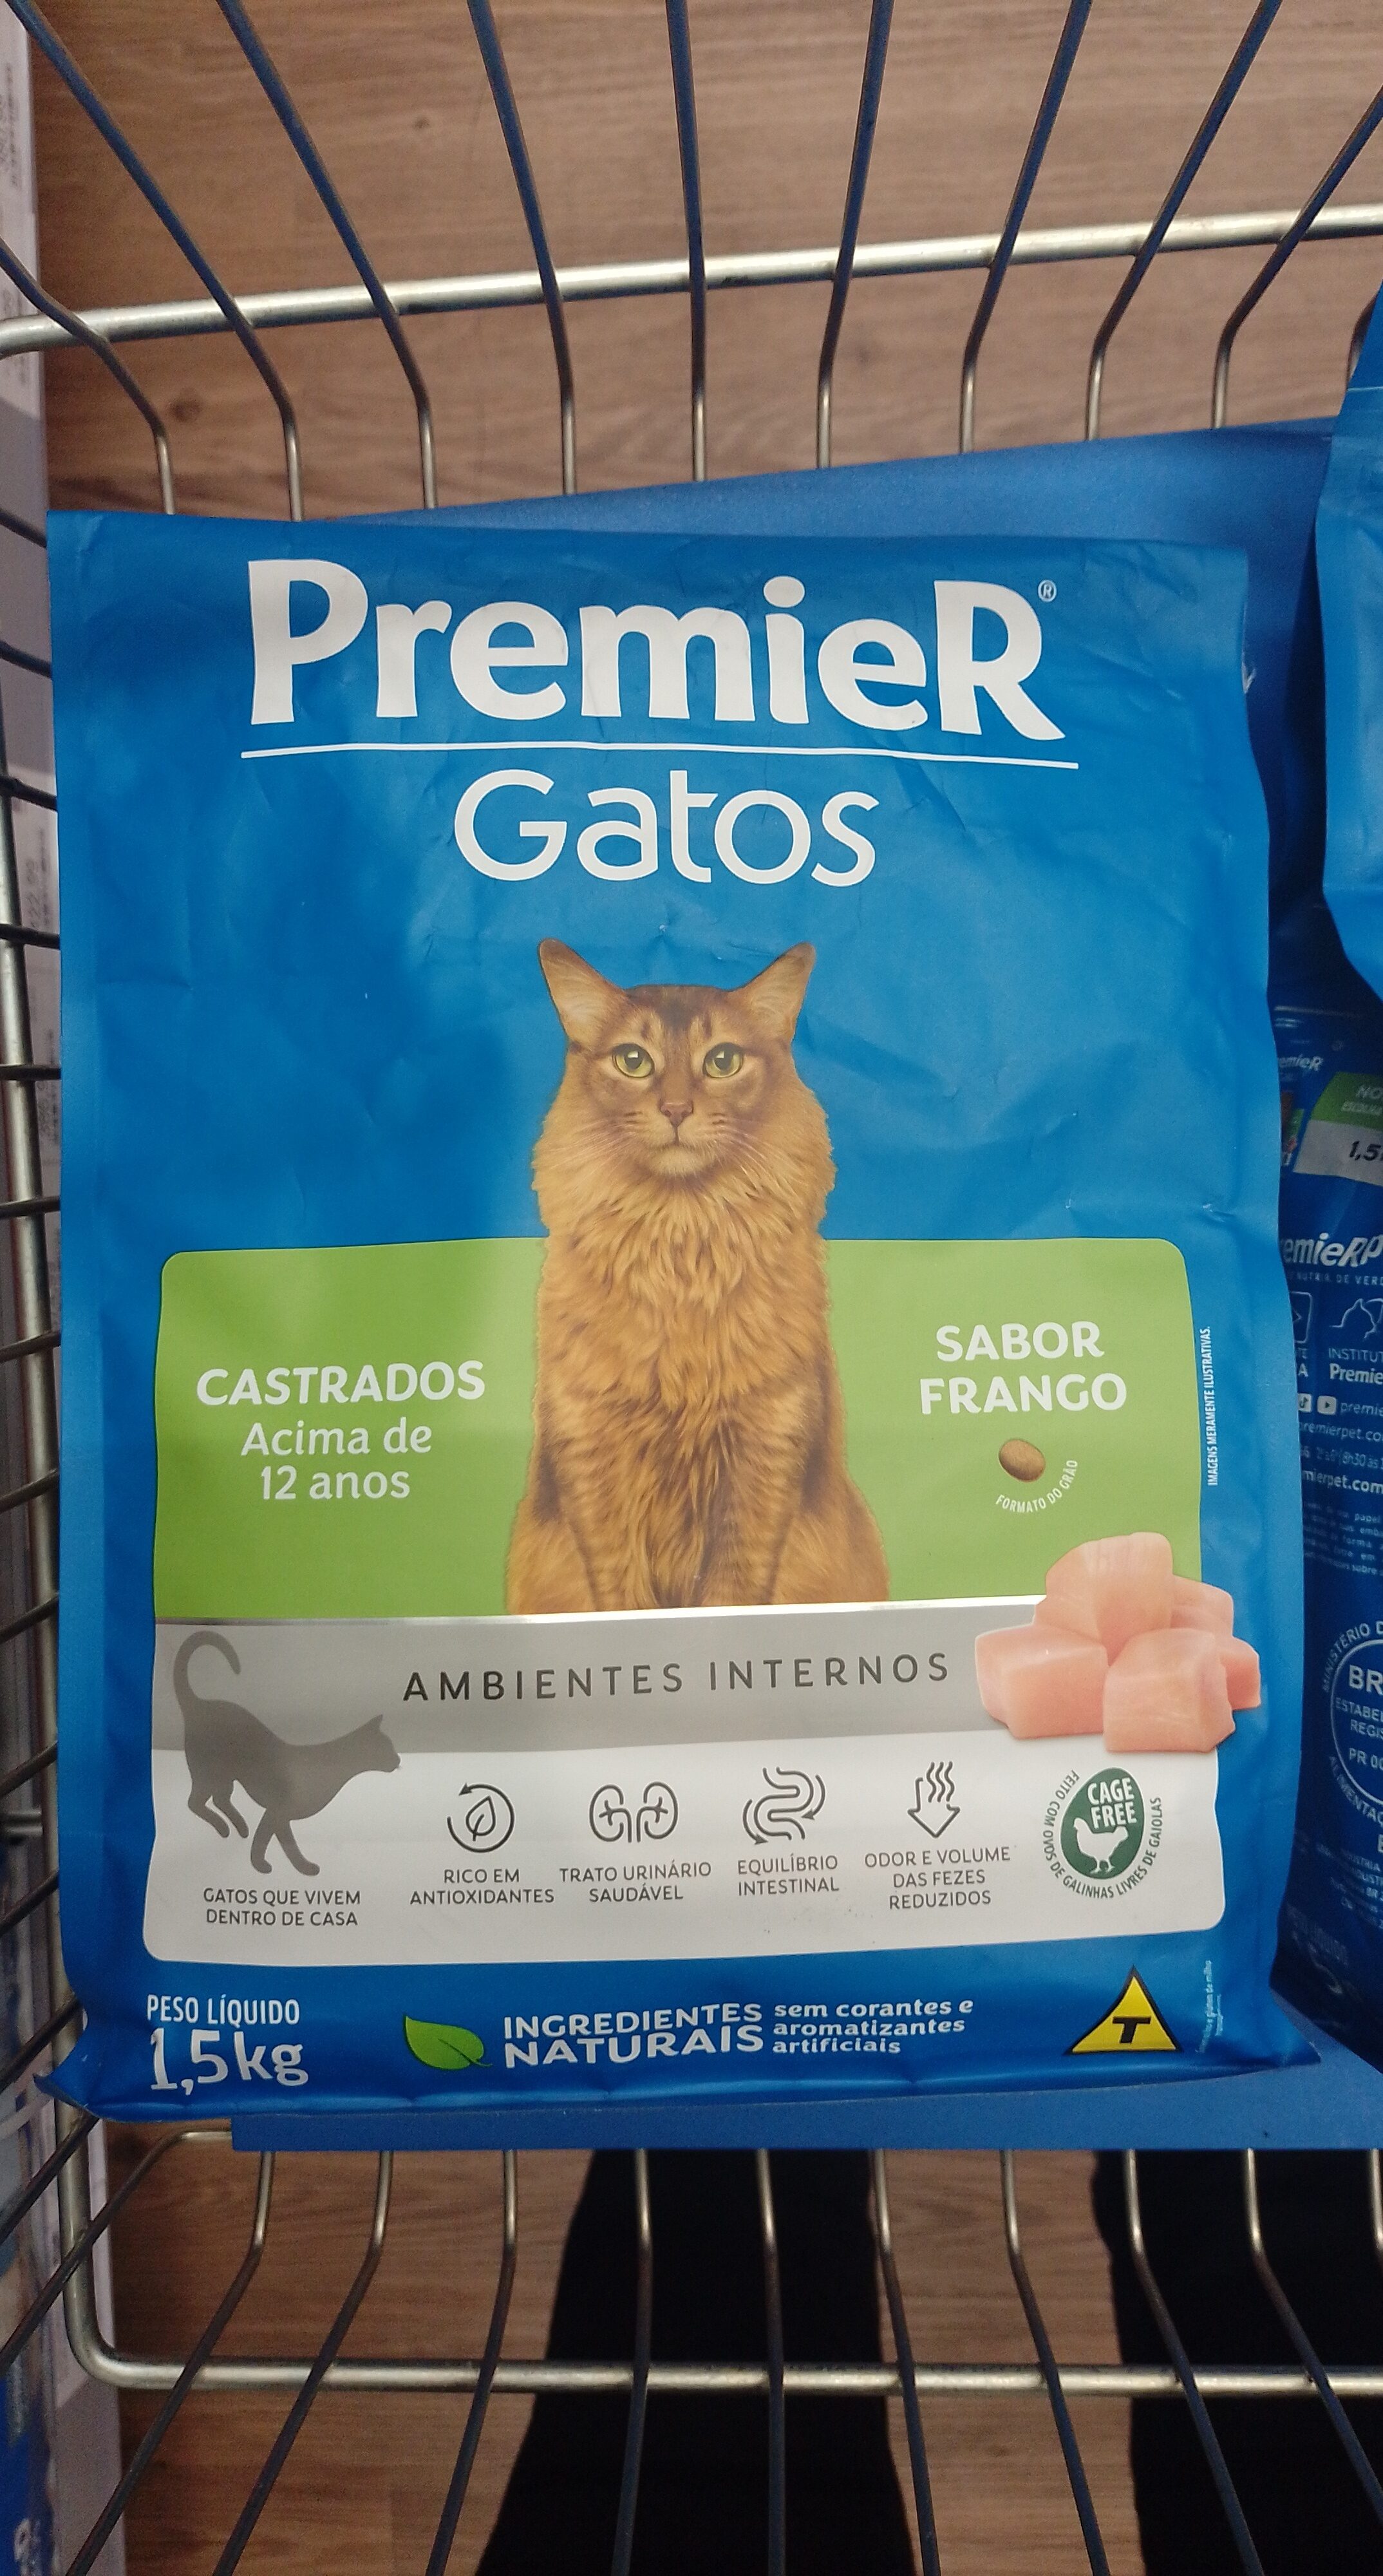 Premier Gatos Castrados 12+ Frango 1,5kg - Product - pt